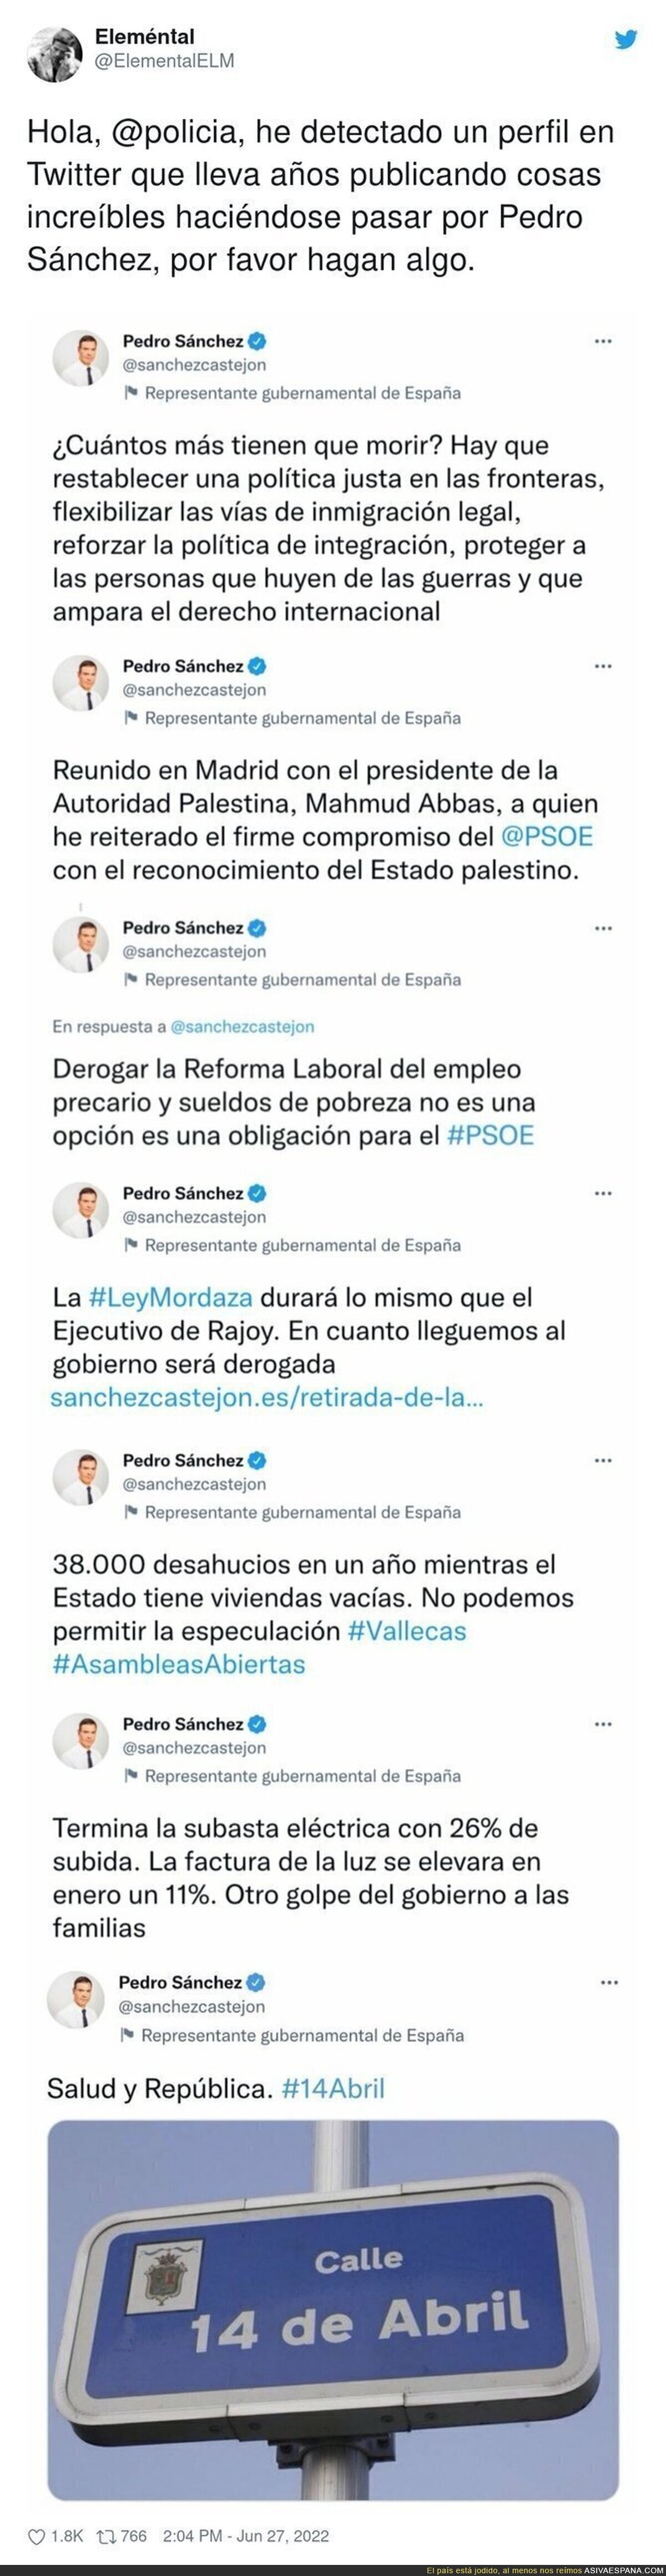 Los tuits de Pedro Sánchez en el pasado que le dejan totalmente retratado por las actuaciones que tiene en 2022